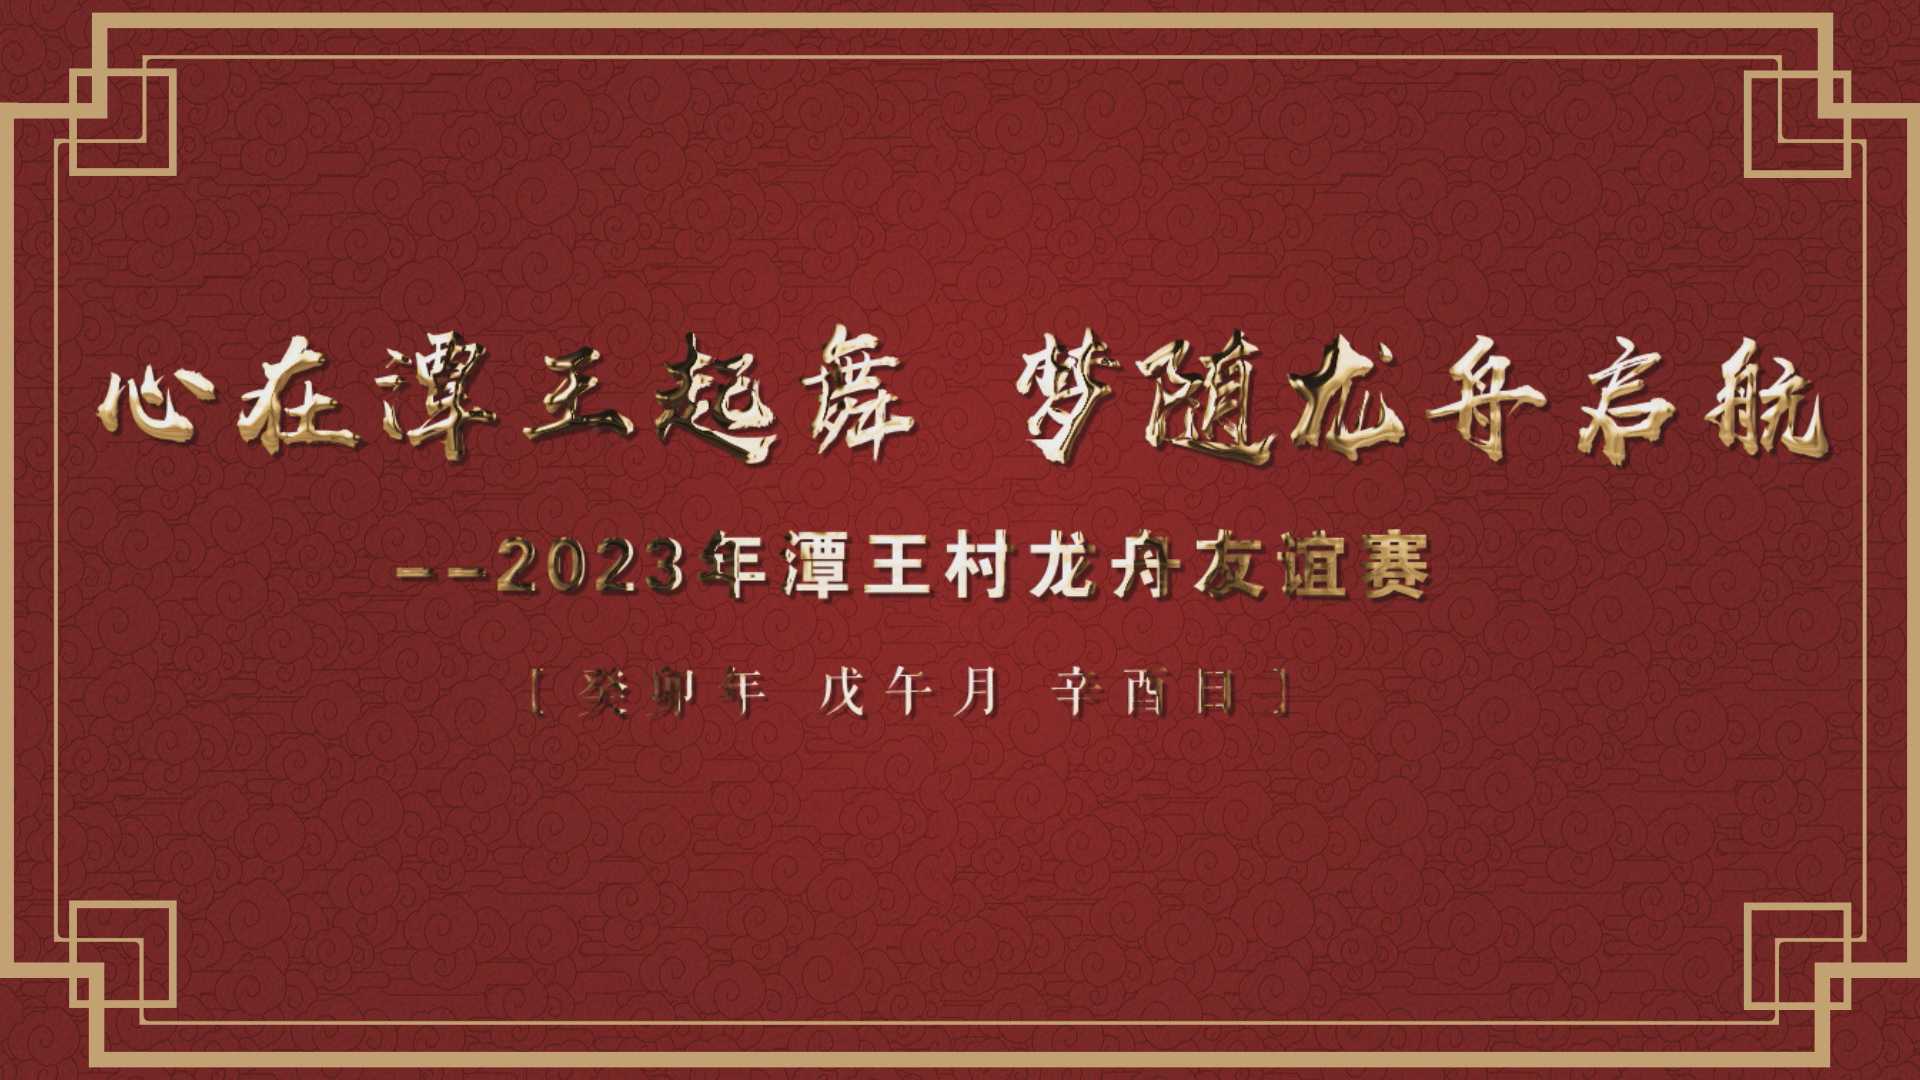 2023潭王村龙舟友谊赛